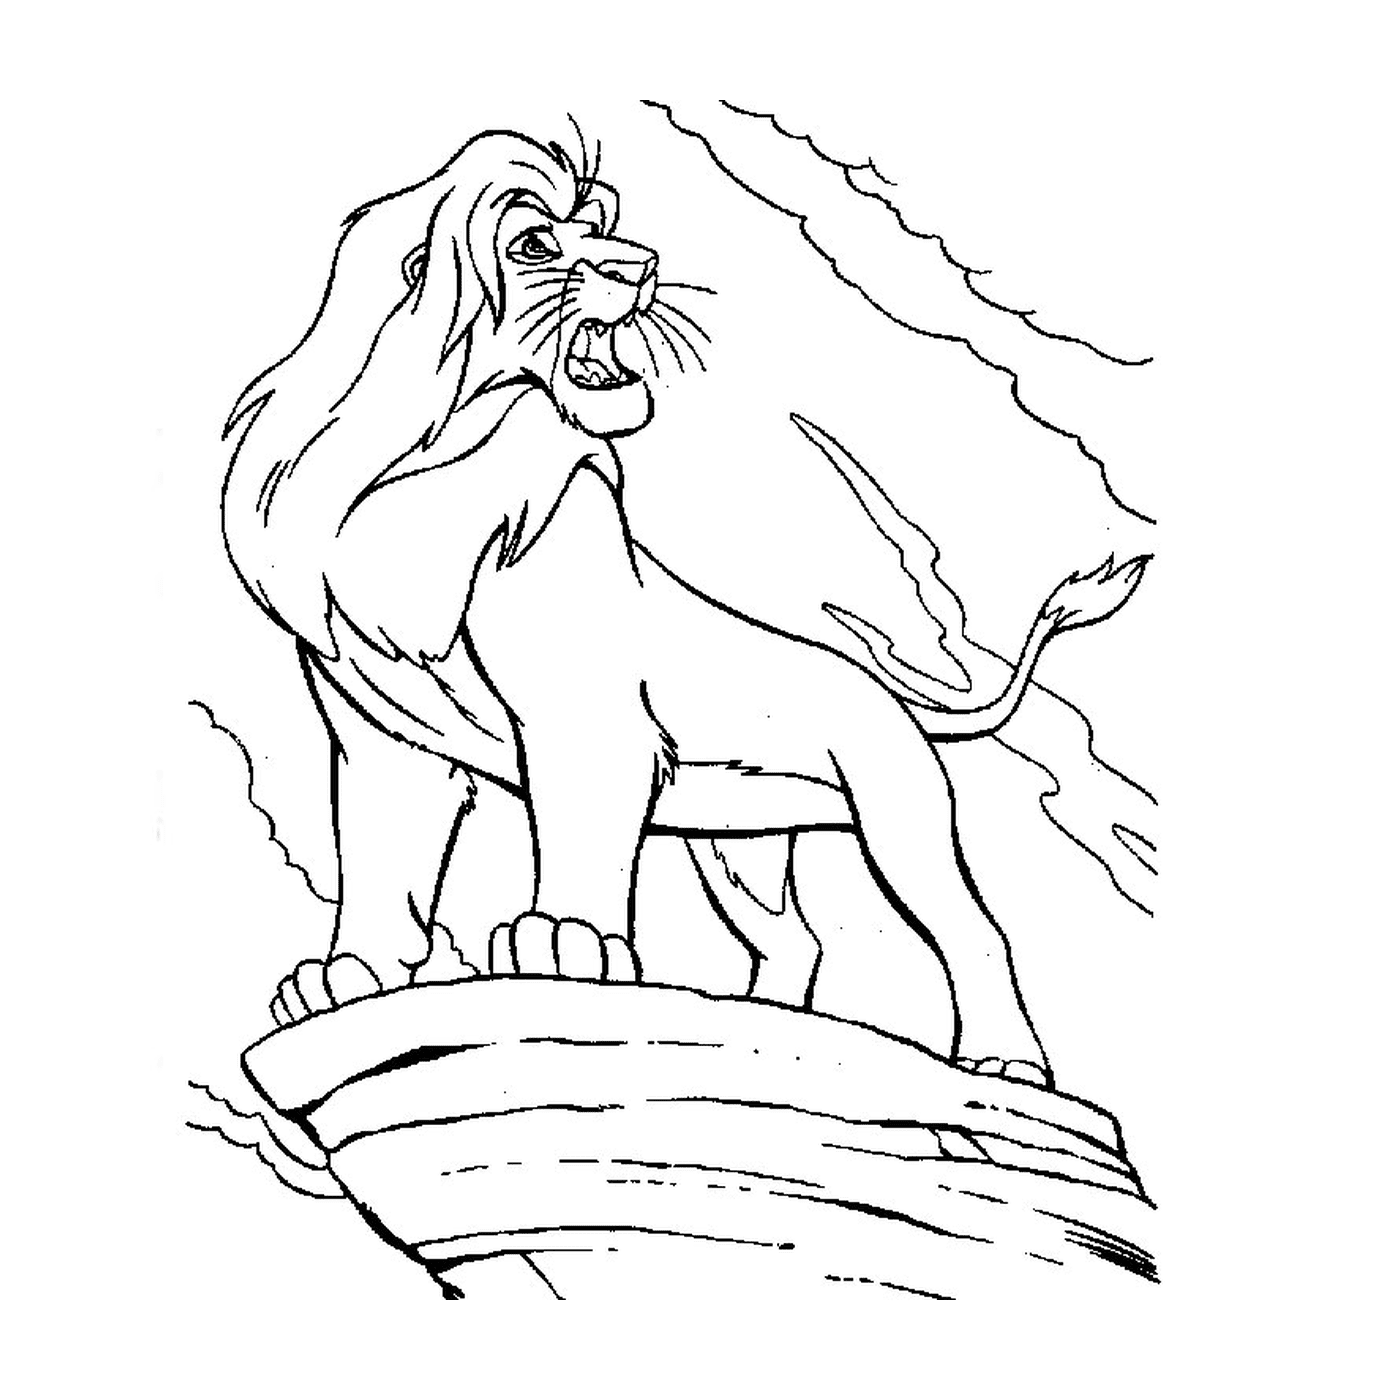  一只狮子站在悬崖顶上 